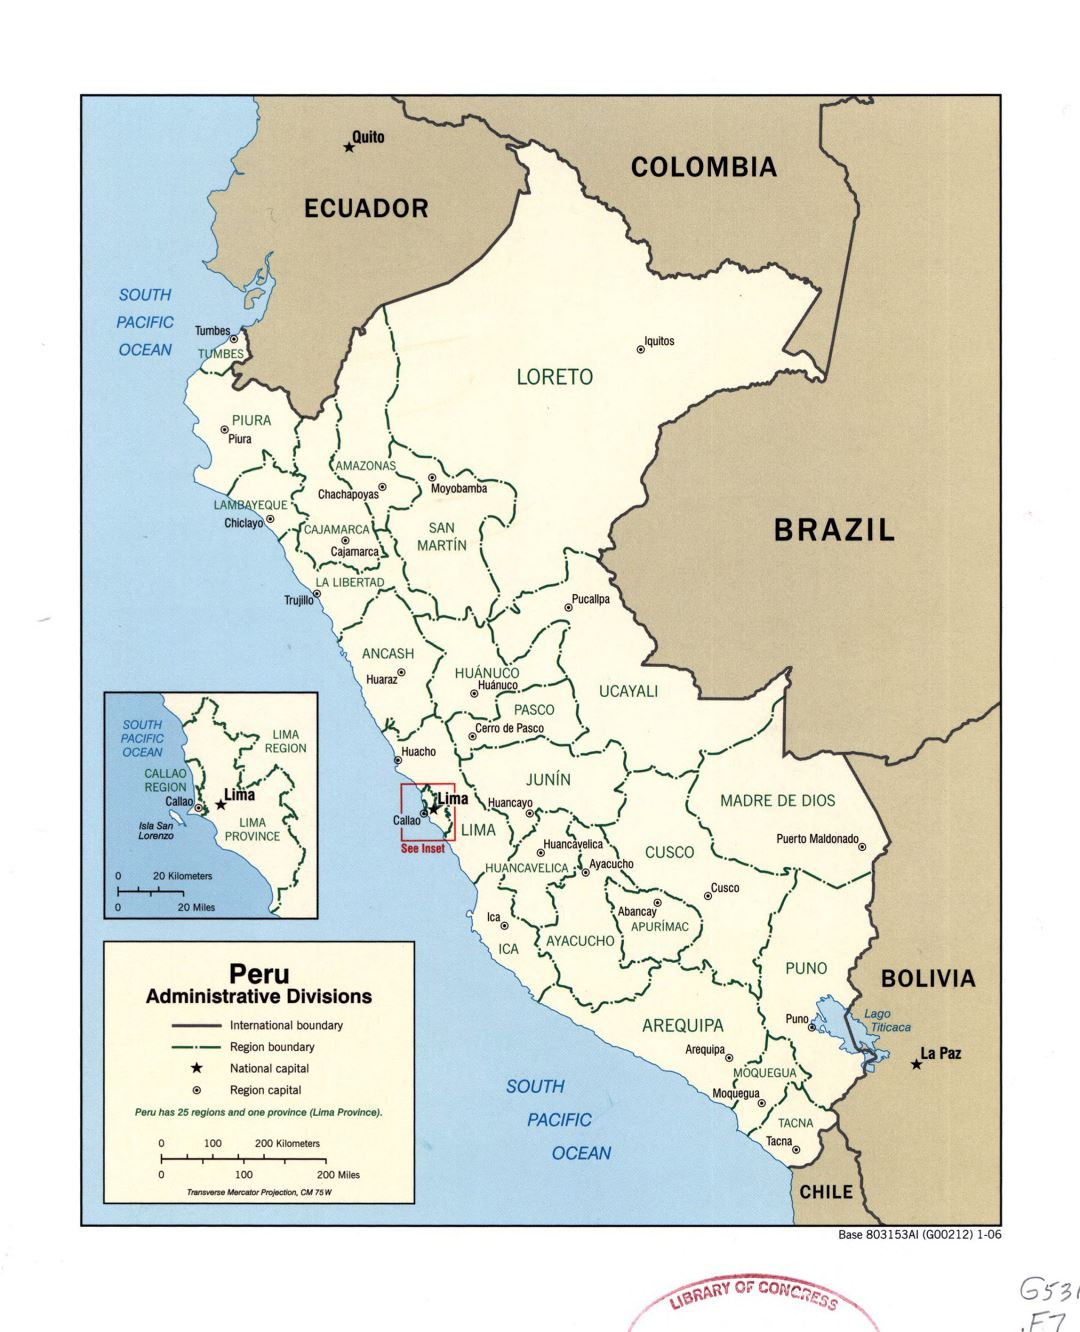 Большая детальная карта административных делений Перу с отметками крупных городов - 2006